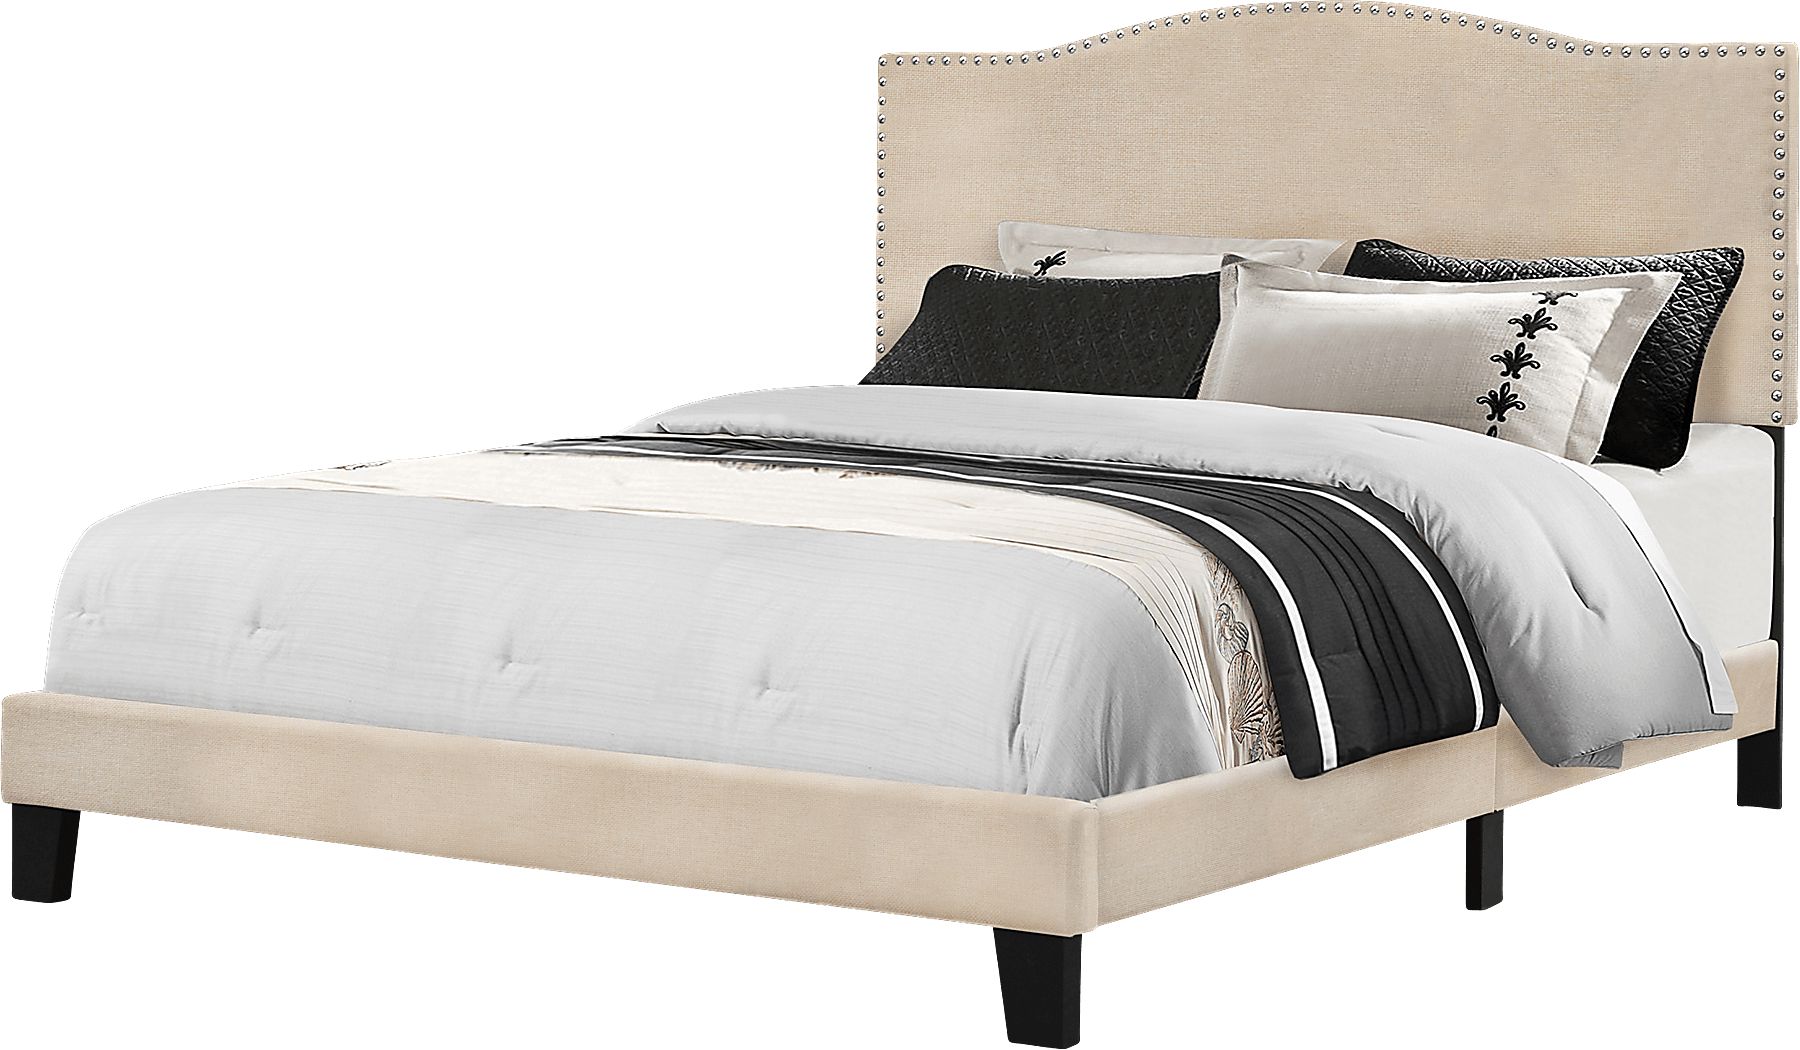 Kiley Linen Queen Upholstered Bed